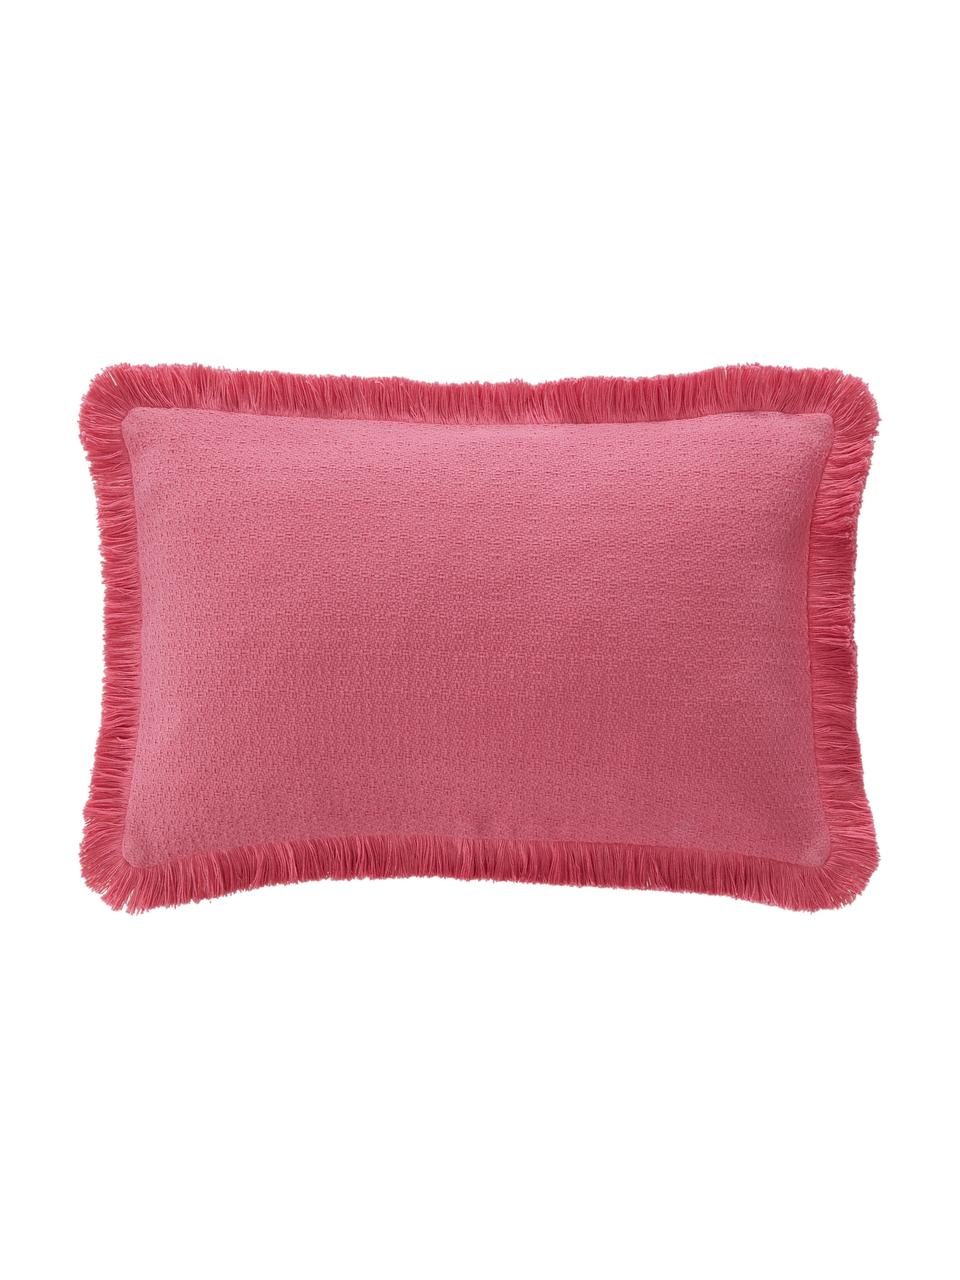 Housse de coussin rectangulaire rose à franges Libi, 100 % coton, Rose, larg. 30 x long. 50 cm